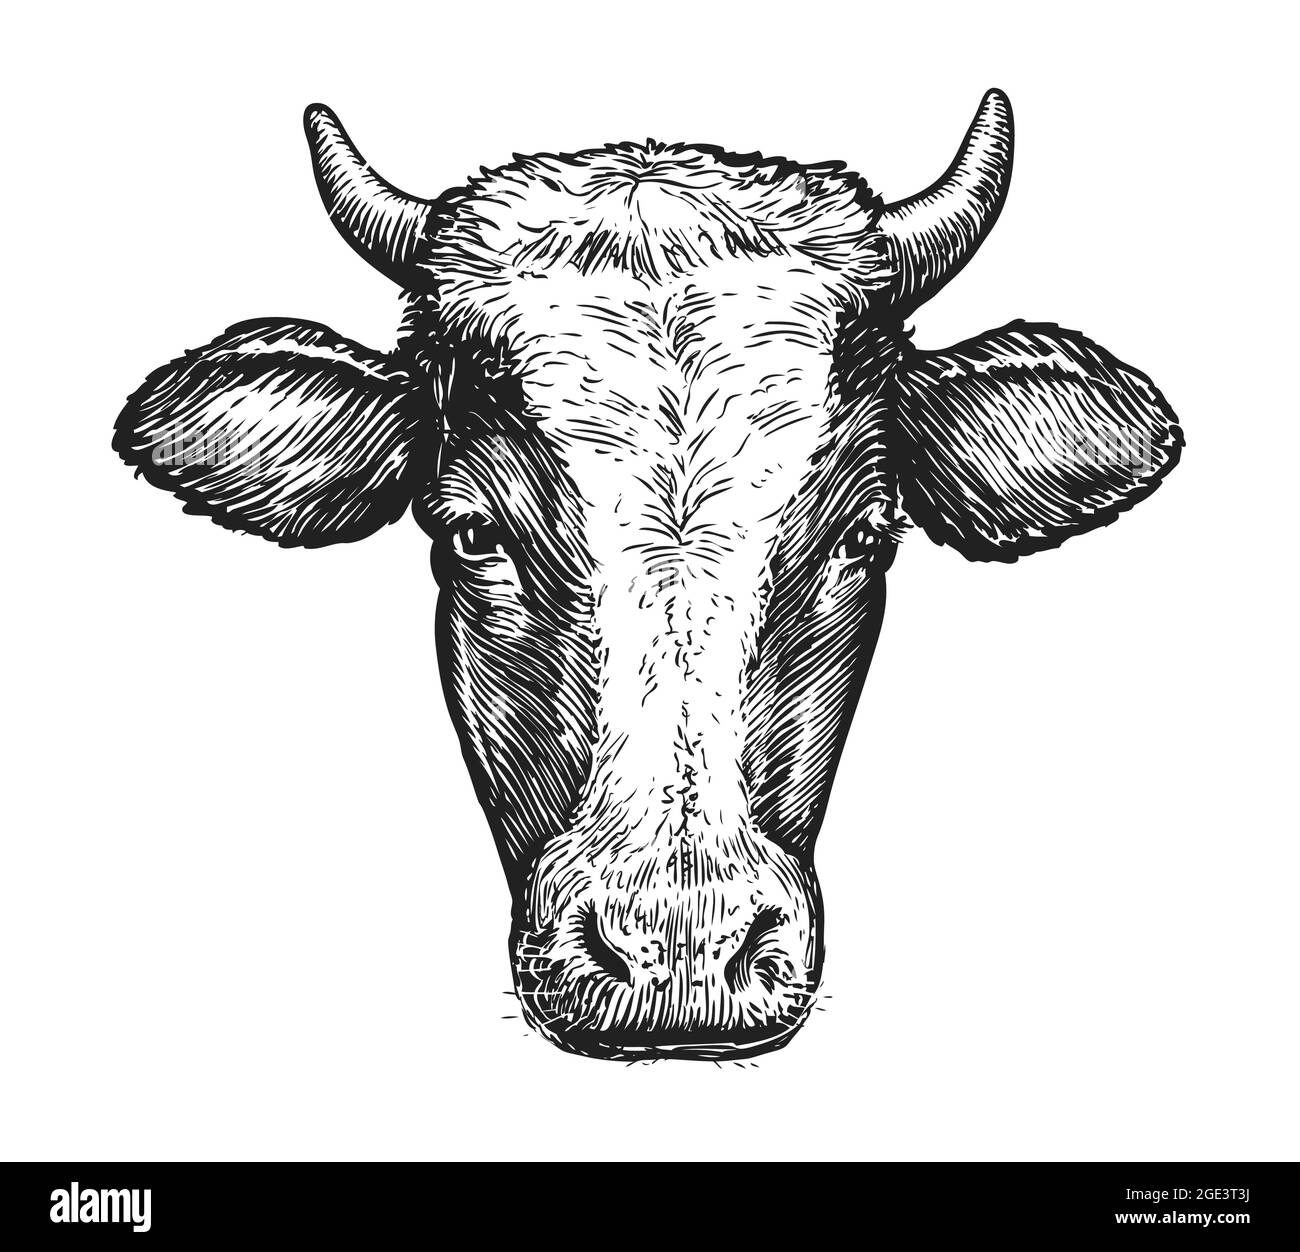 Schizzo di museruola di mucca con corna. Immagine vettoriale verticale isolata su sfondo bianco Illustrazione Vettoriale